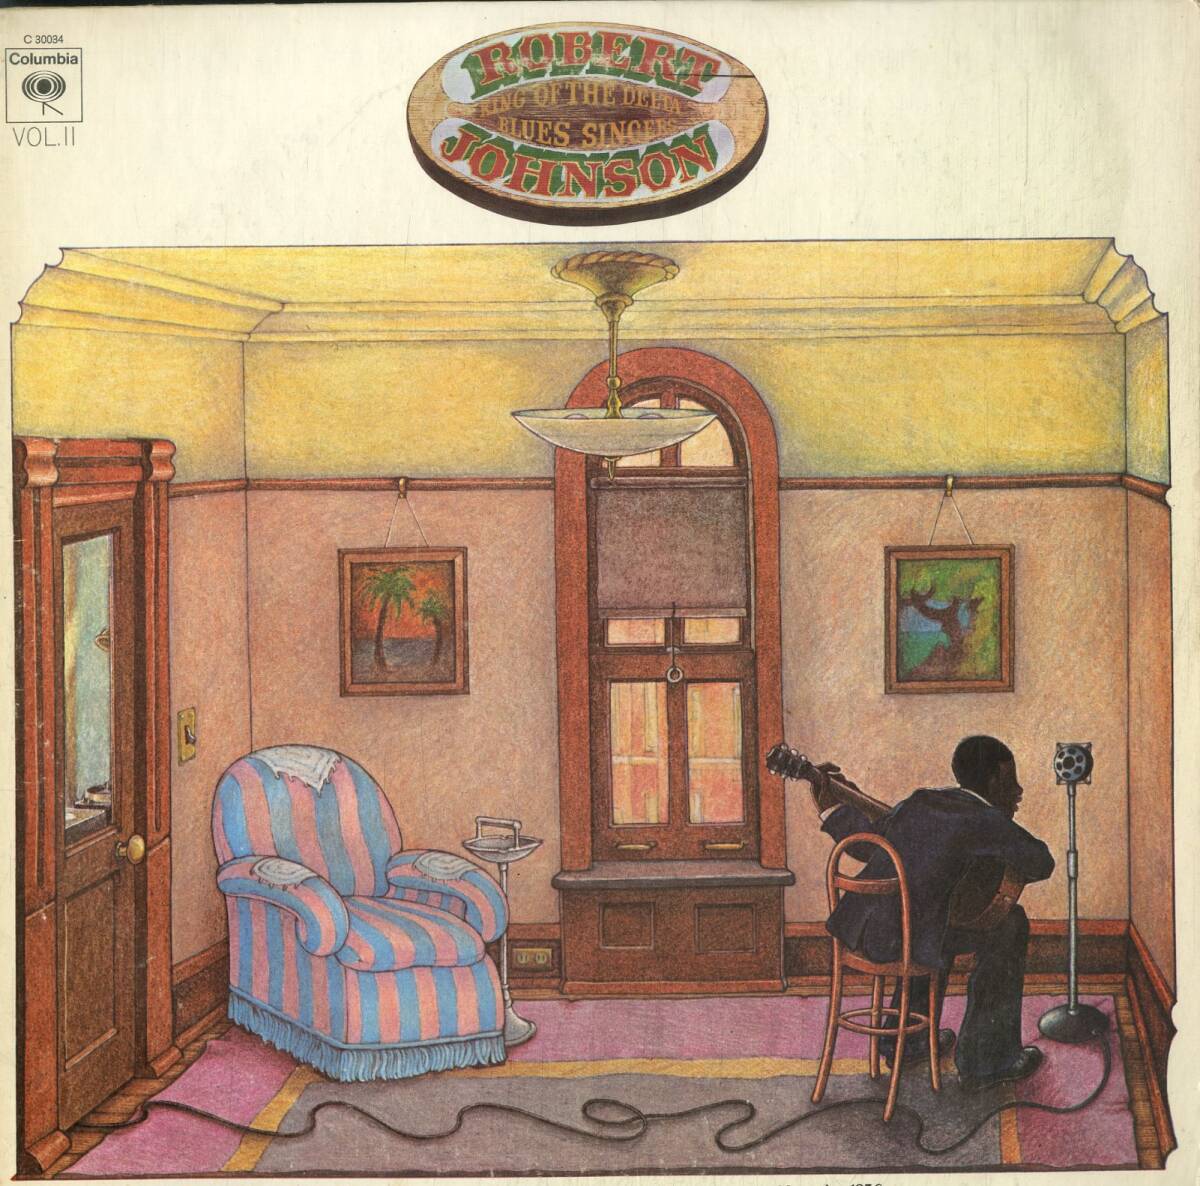 A00588743/LP/ロバート・ジョンソン (ROBERT JOHNSON)「King Of The Delta Blues Singers Vol.II (C-30034・デルタブルース・BLUES)」_画像1